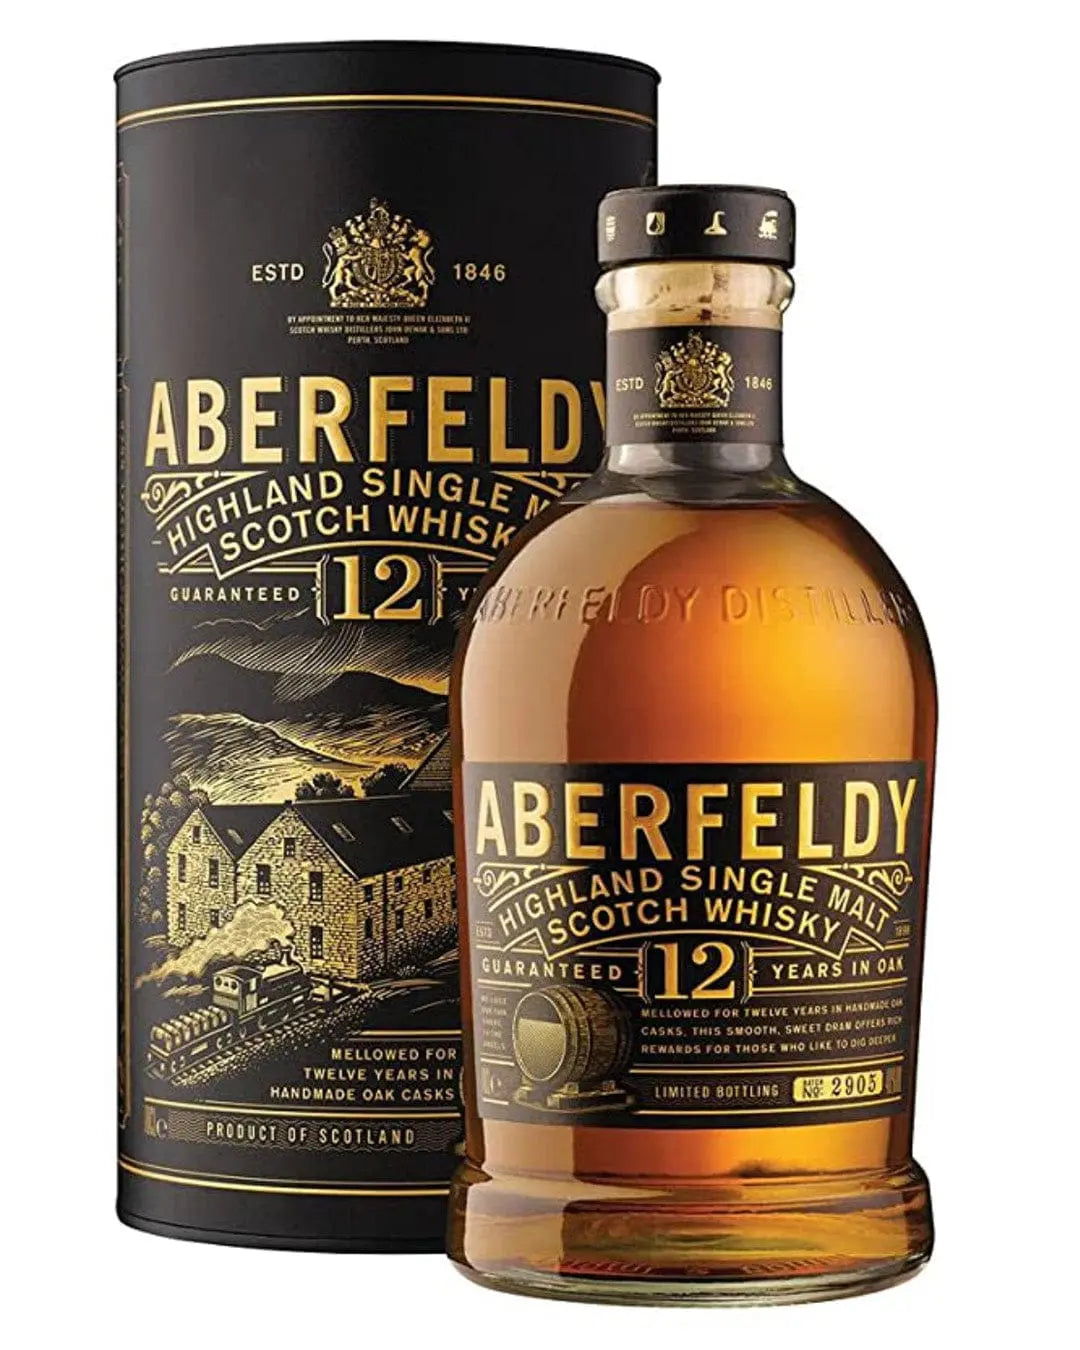 Aberfeldy 12 Year Old Highland Single Malt Scotch Whisky, 70 cl Whisky